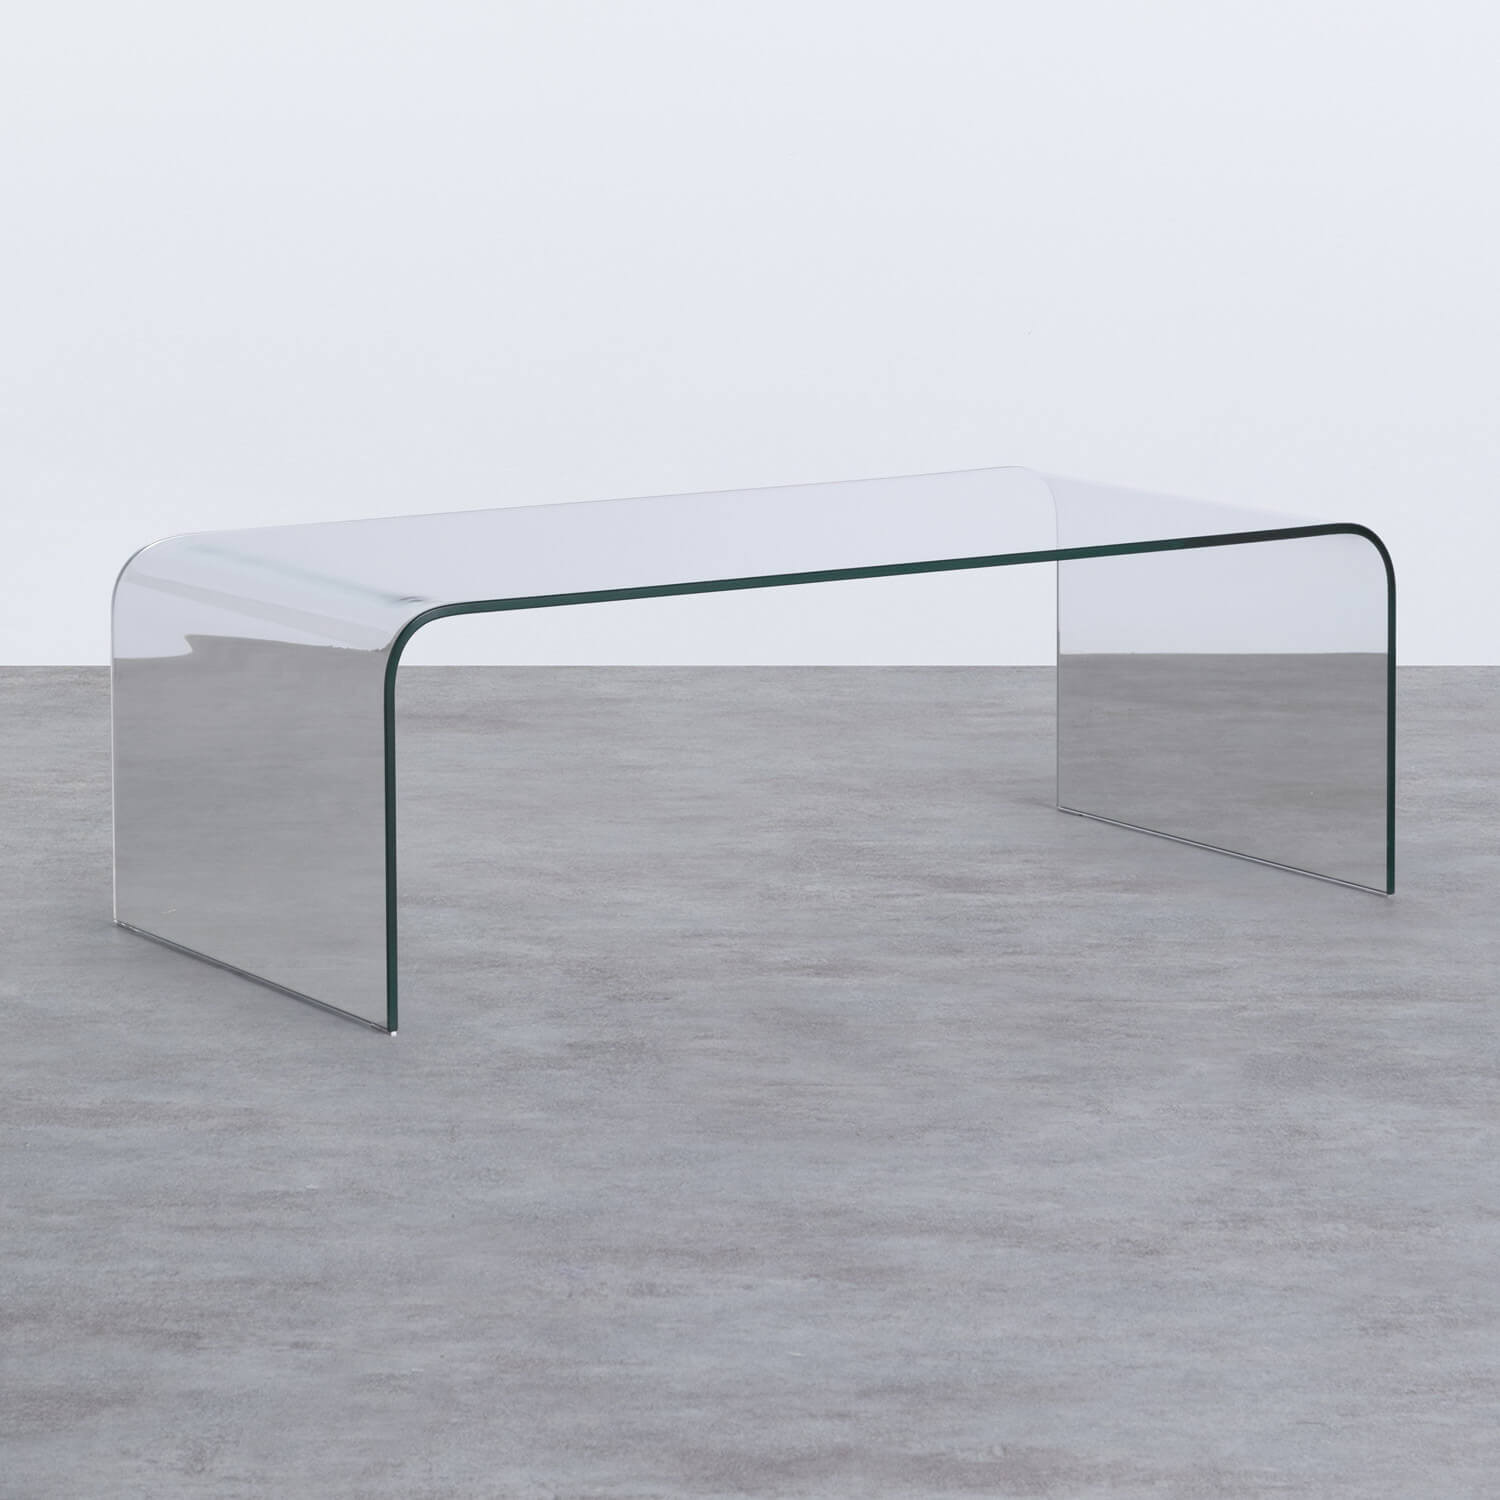 Tavolino Rettangolare in Cristallo Temperato (120x60 cm) Curve, immagine della galleria 1